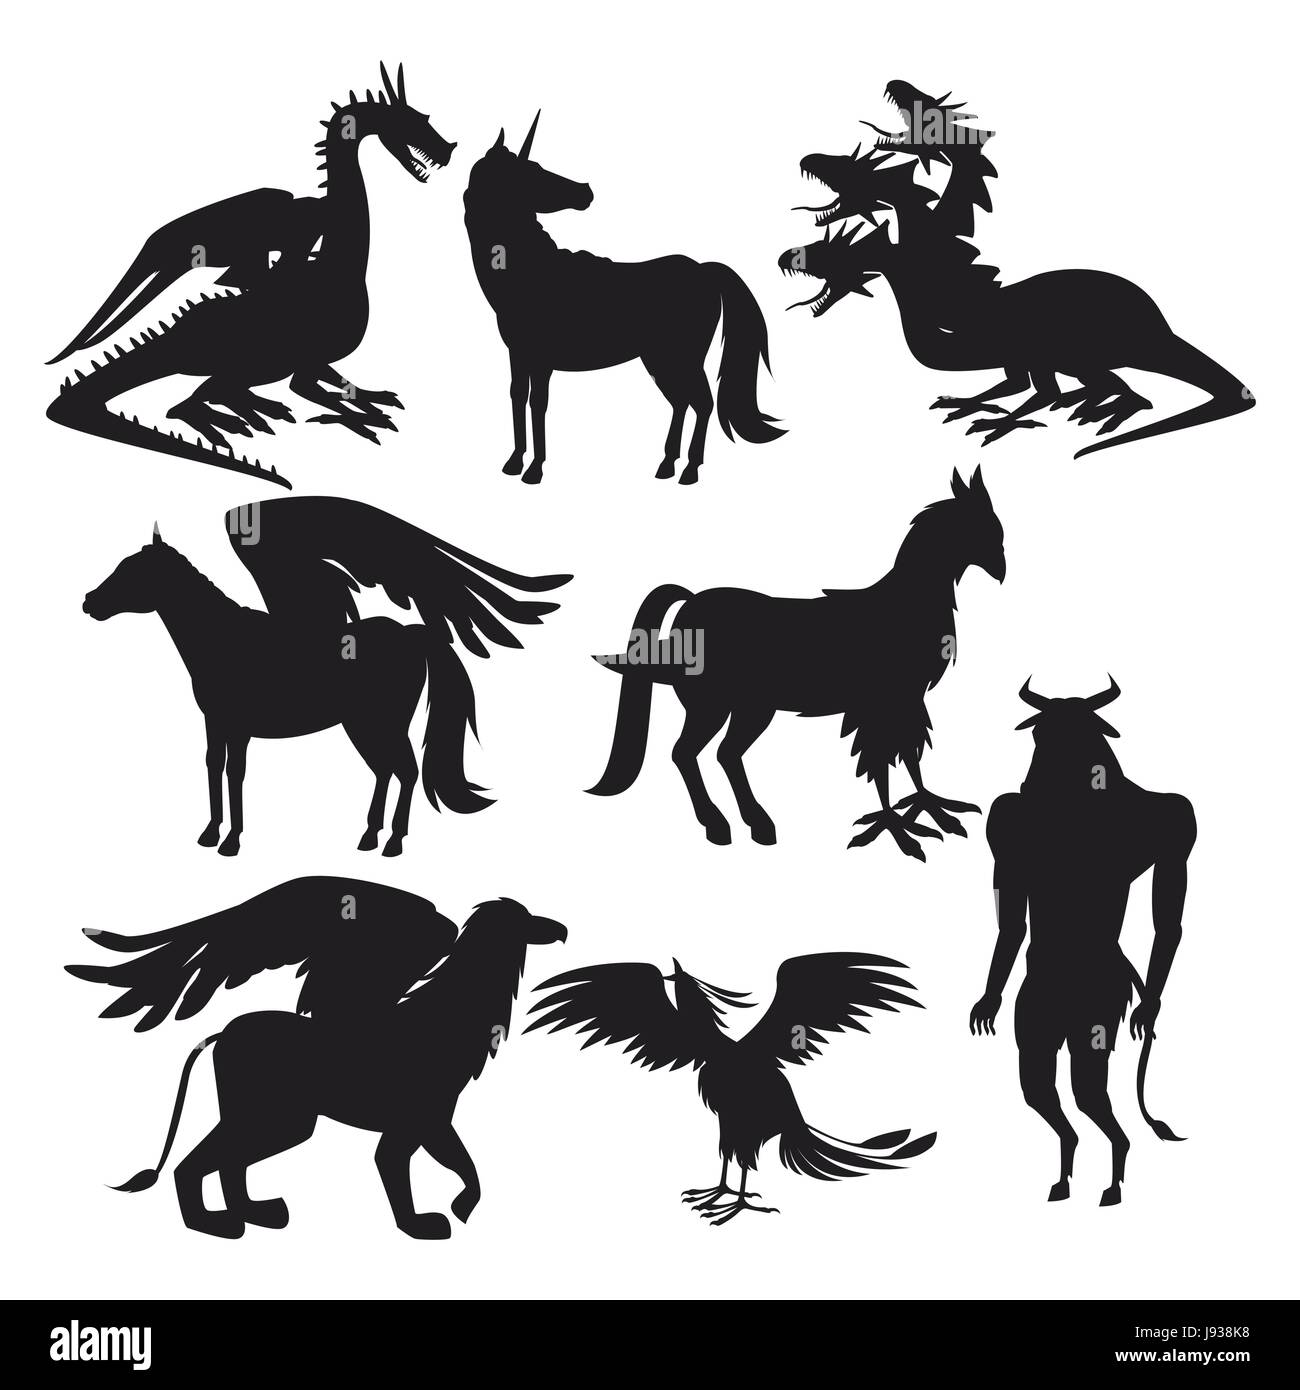 Legen Sie schwarze Silhouette Tiere griechischen mythologische Kreaturen Stock Vektor